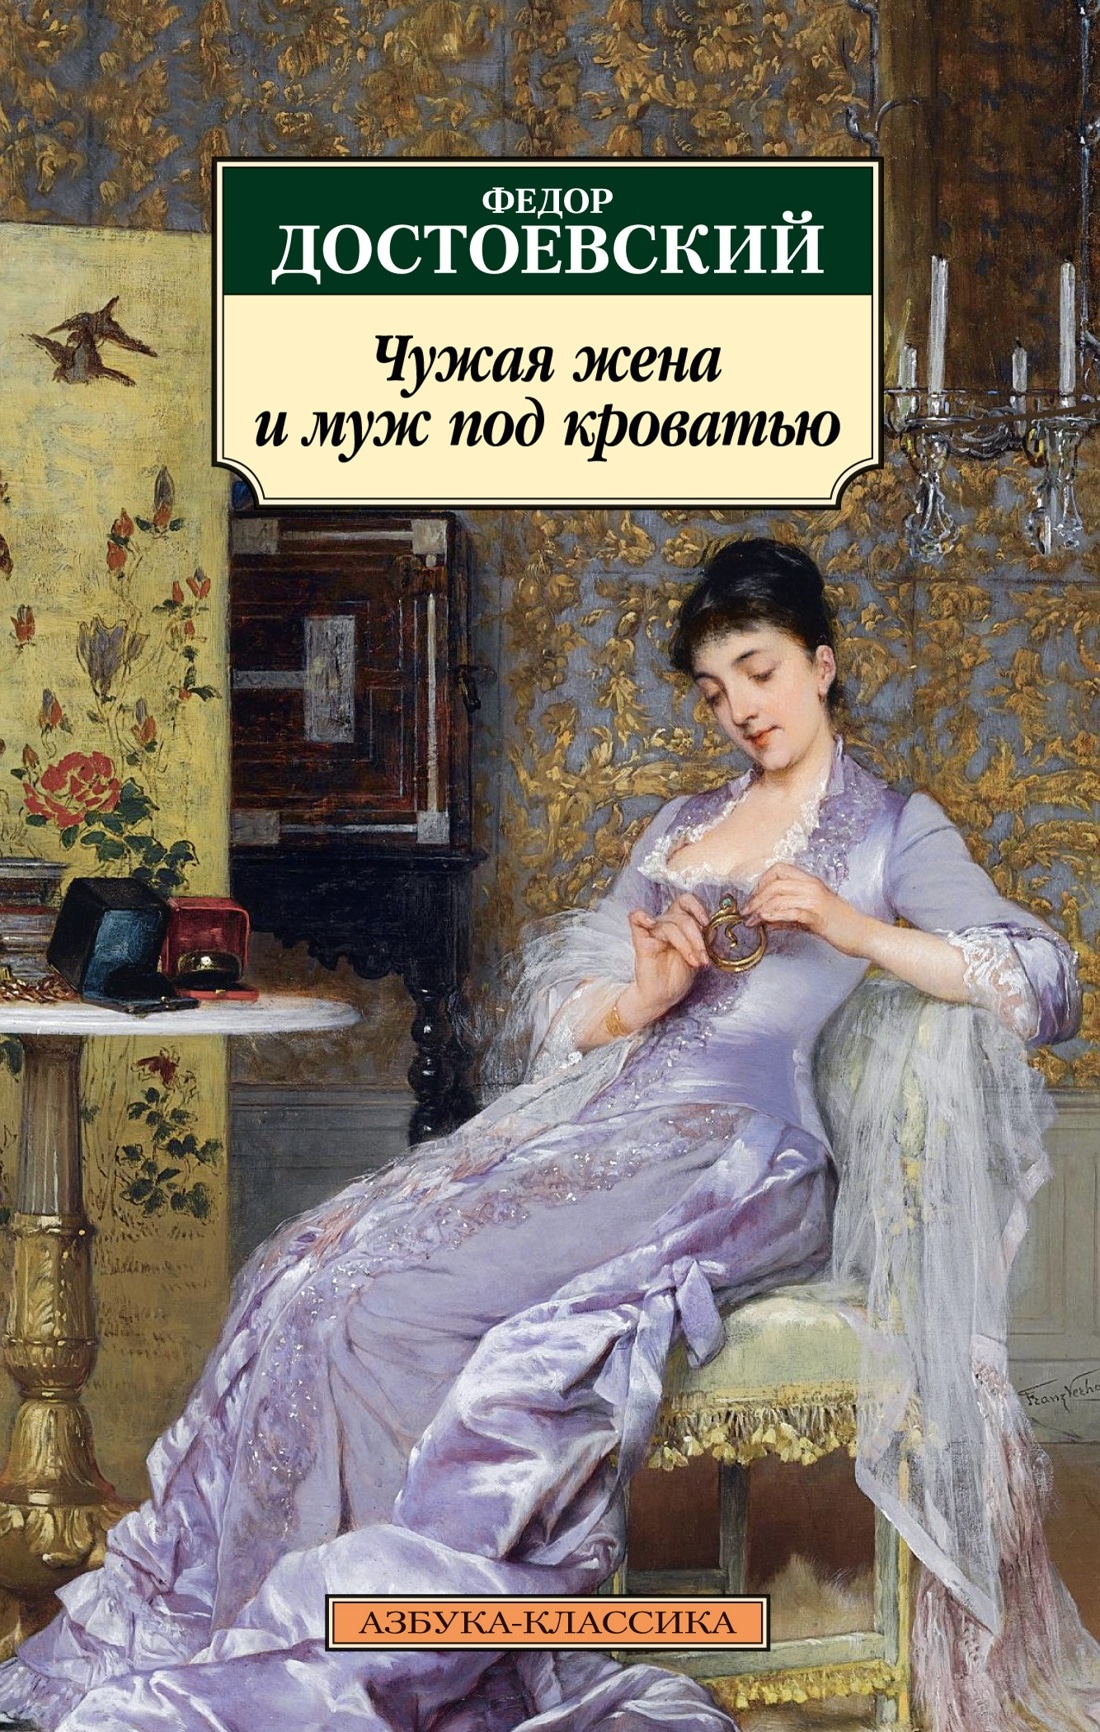 Книга «Чужая жена и муж под кроватью: Избранная проза» Федор Достоевский — 2023 г.